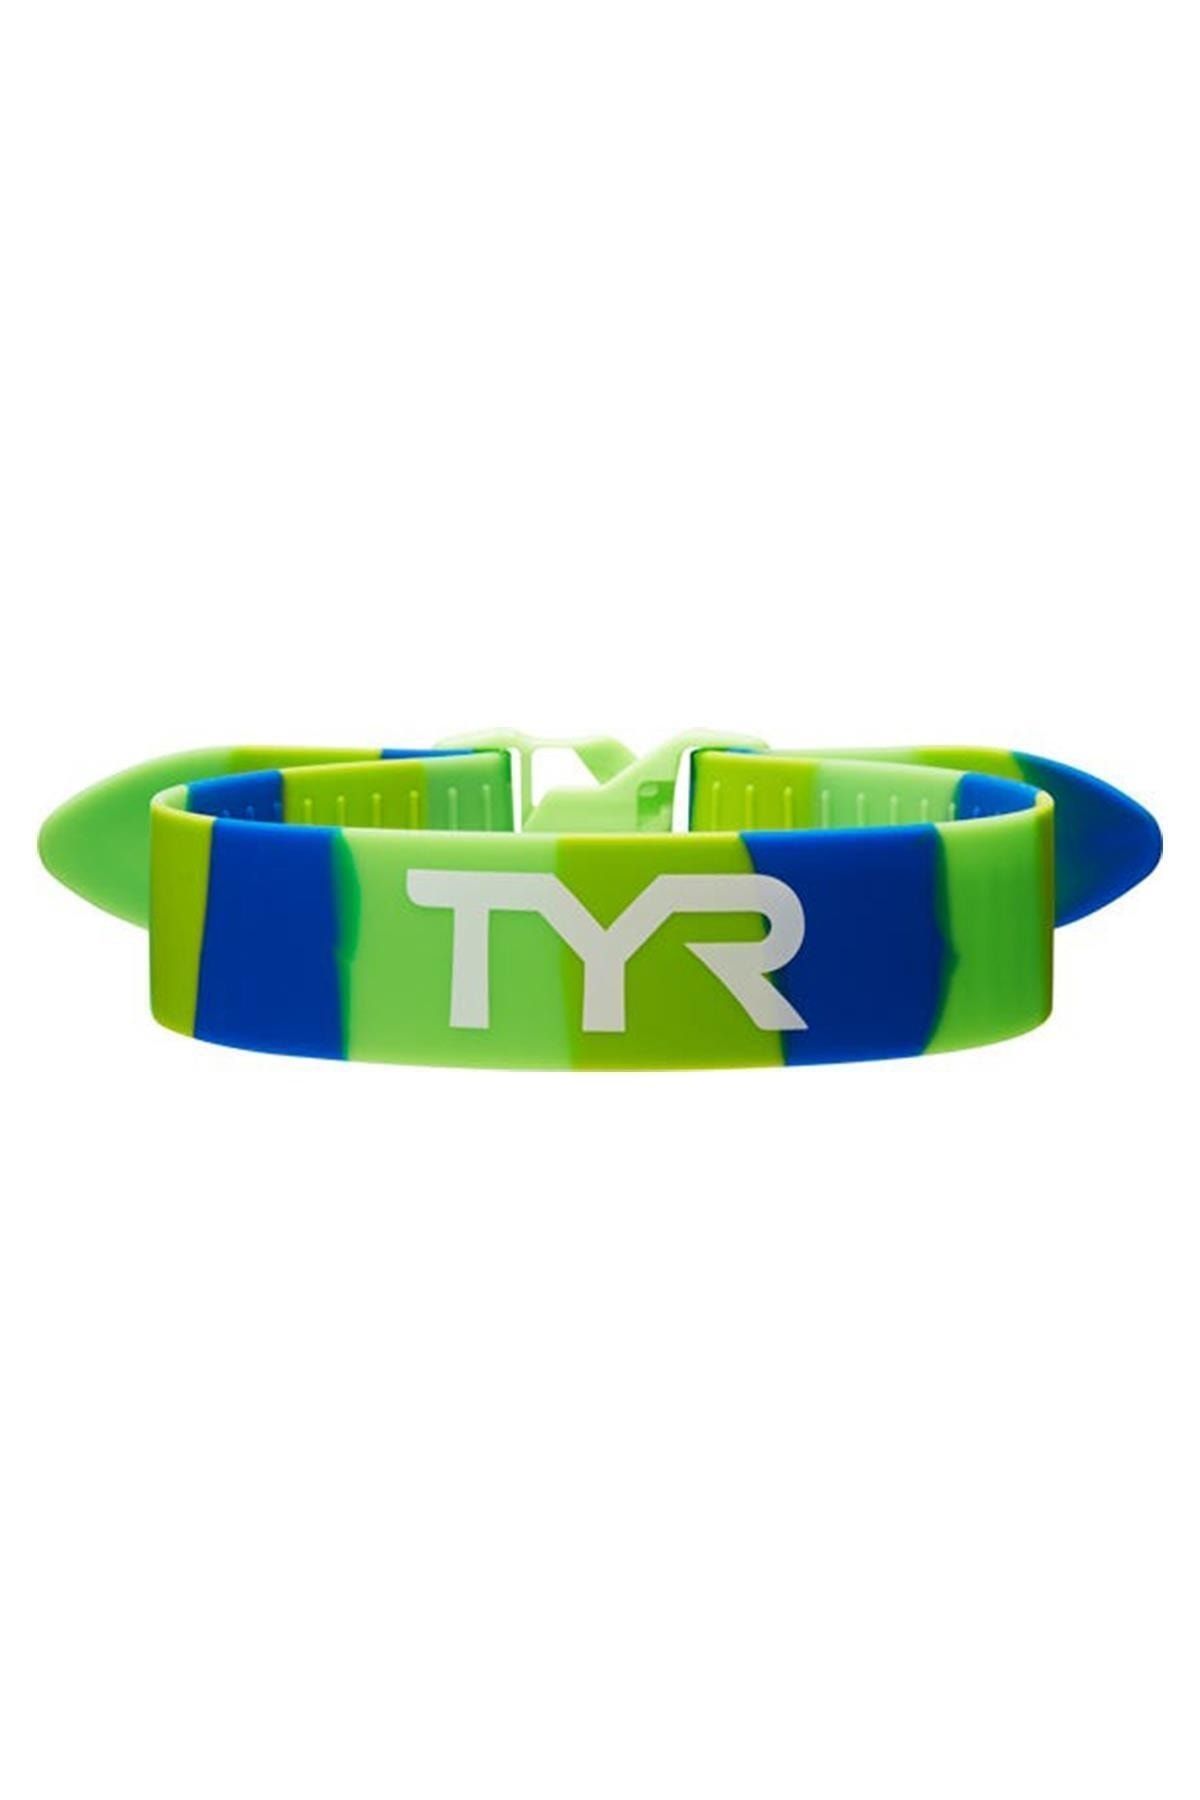 TYR Sport TYR Rally Yeşil/Mavi Antrenman Ayak Bileği Lastiği, Pull Strap